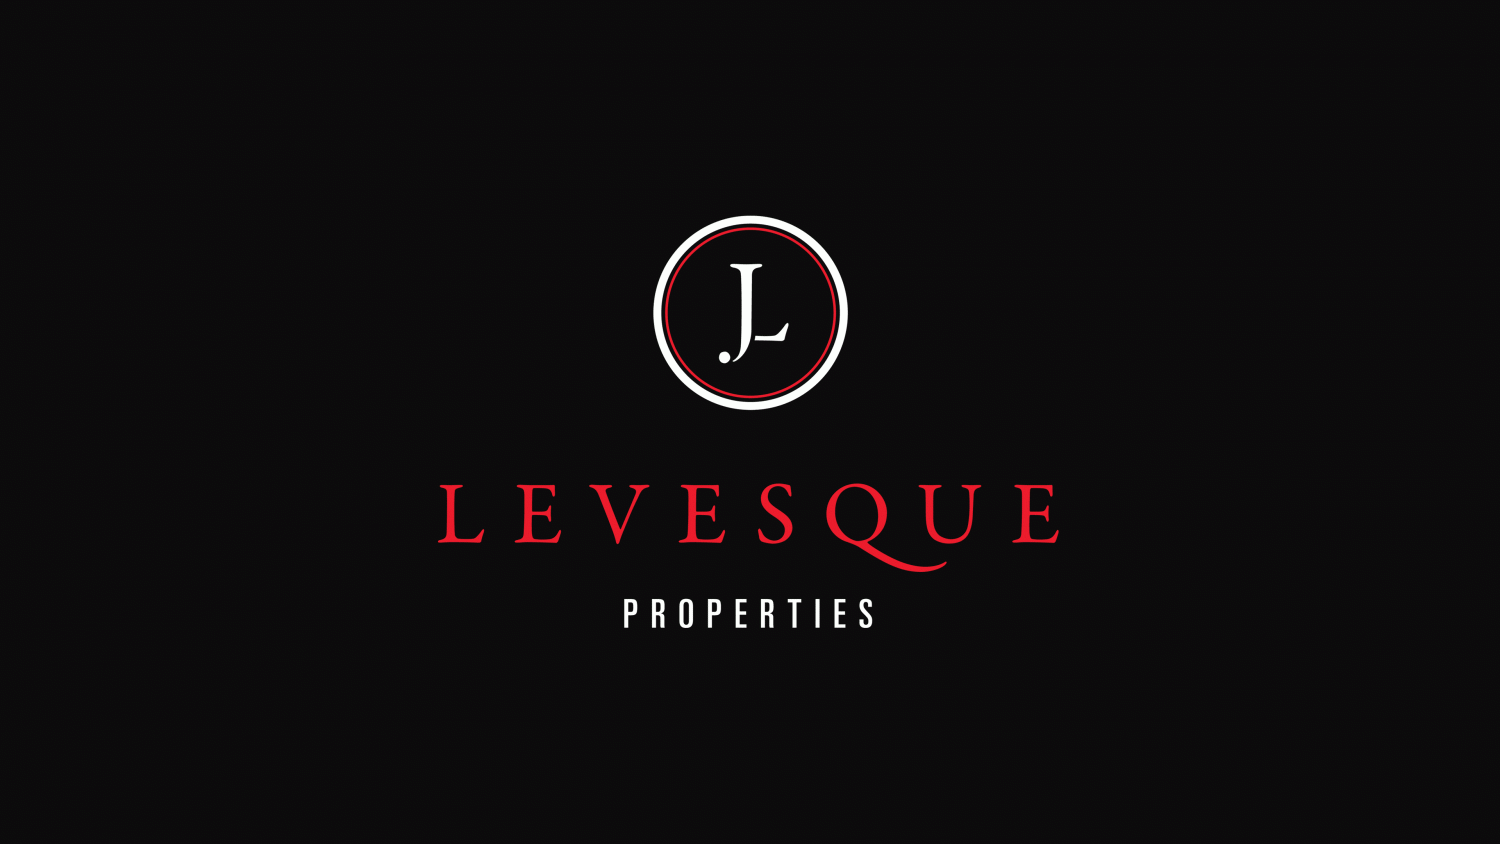 Levesque Properties